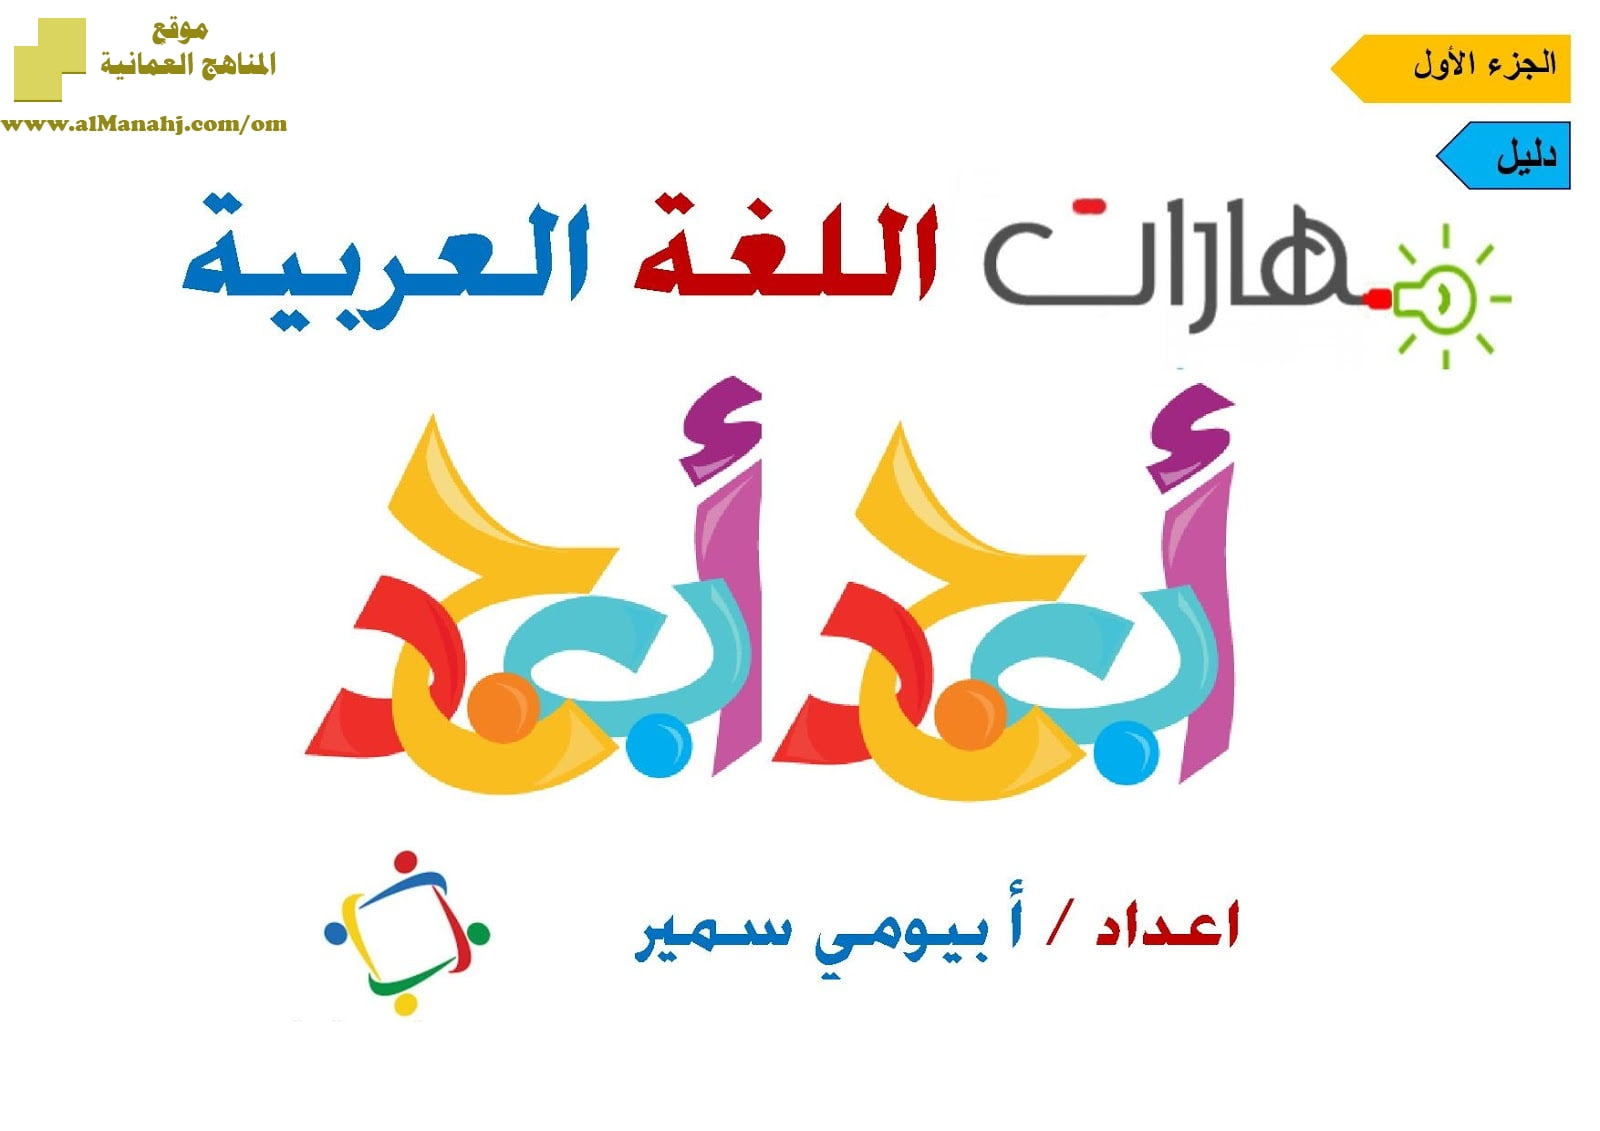 تحميل كراسة مهارات اللغة العربية تمارين وتدريبات (لغة عربية) الثاني